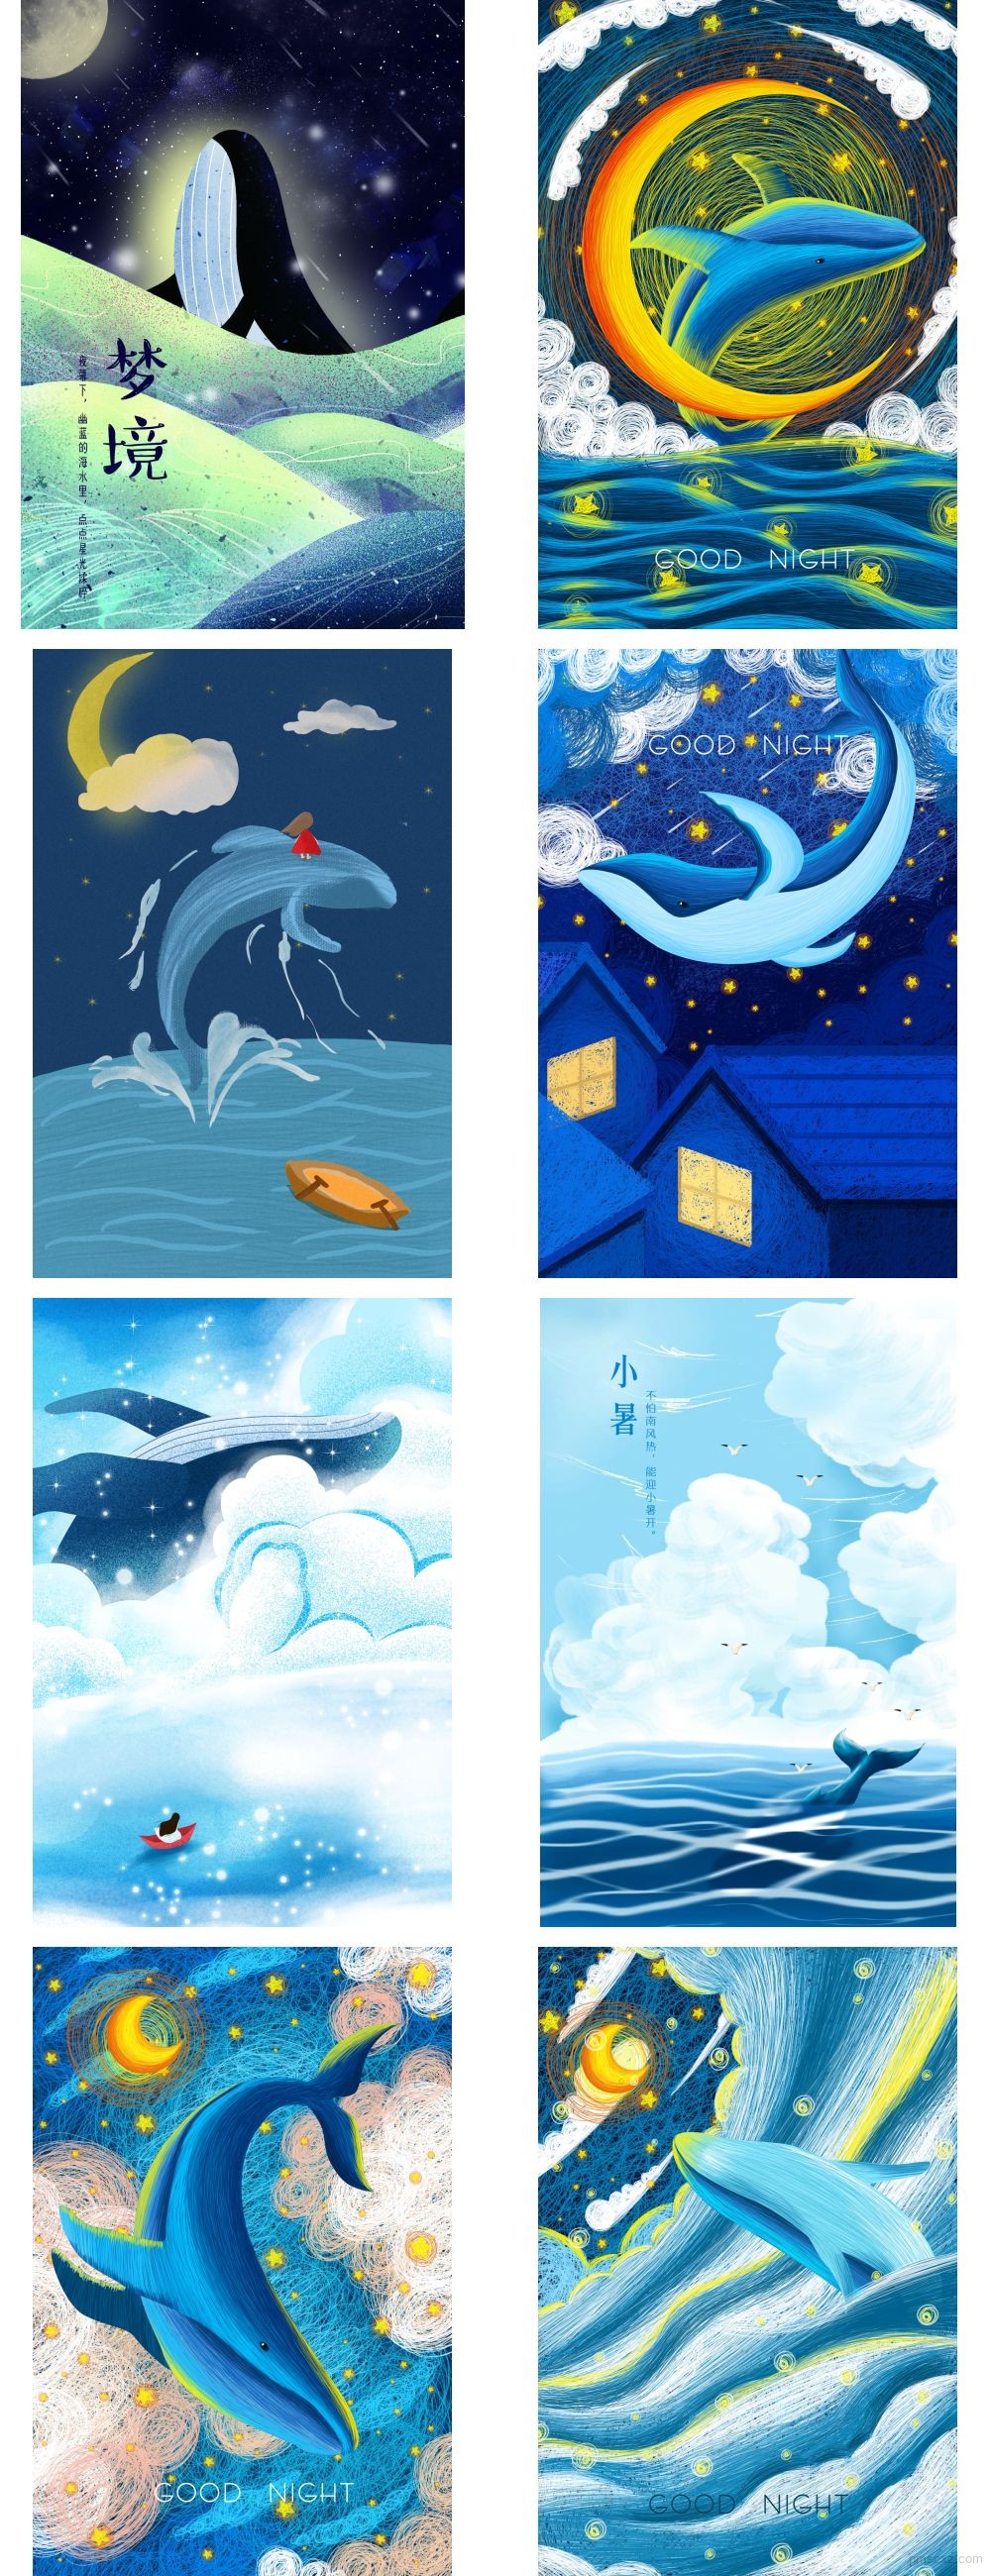 24款唯美水彩卡通晚安蓝鲸鱼装饰插画h5手机壁纸背景psd设计素材 平面素材下载